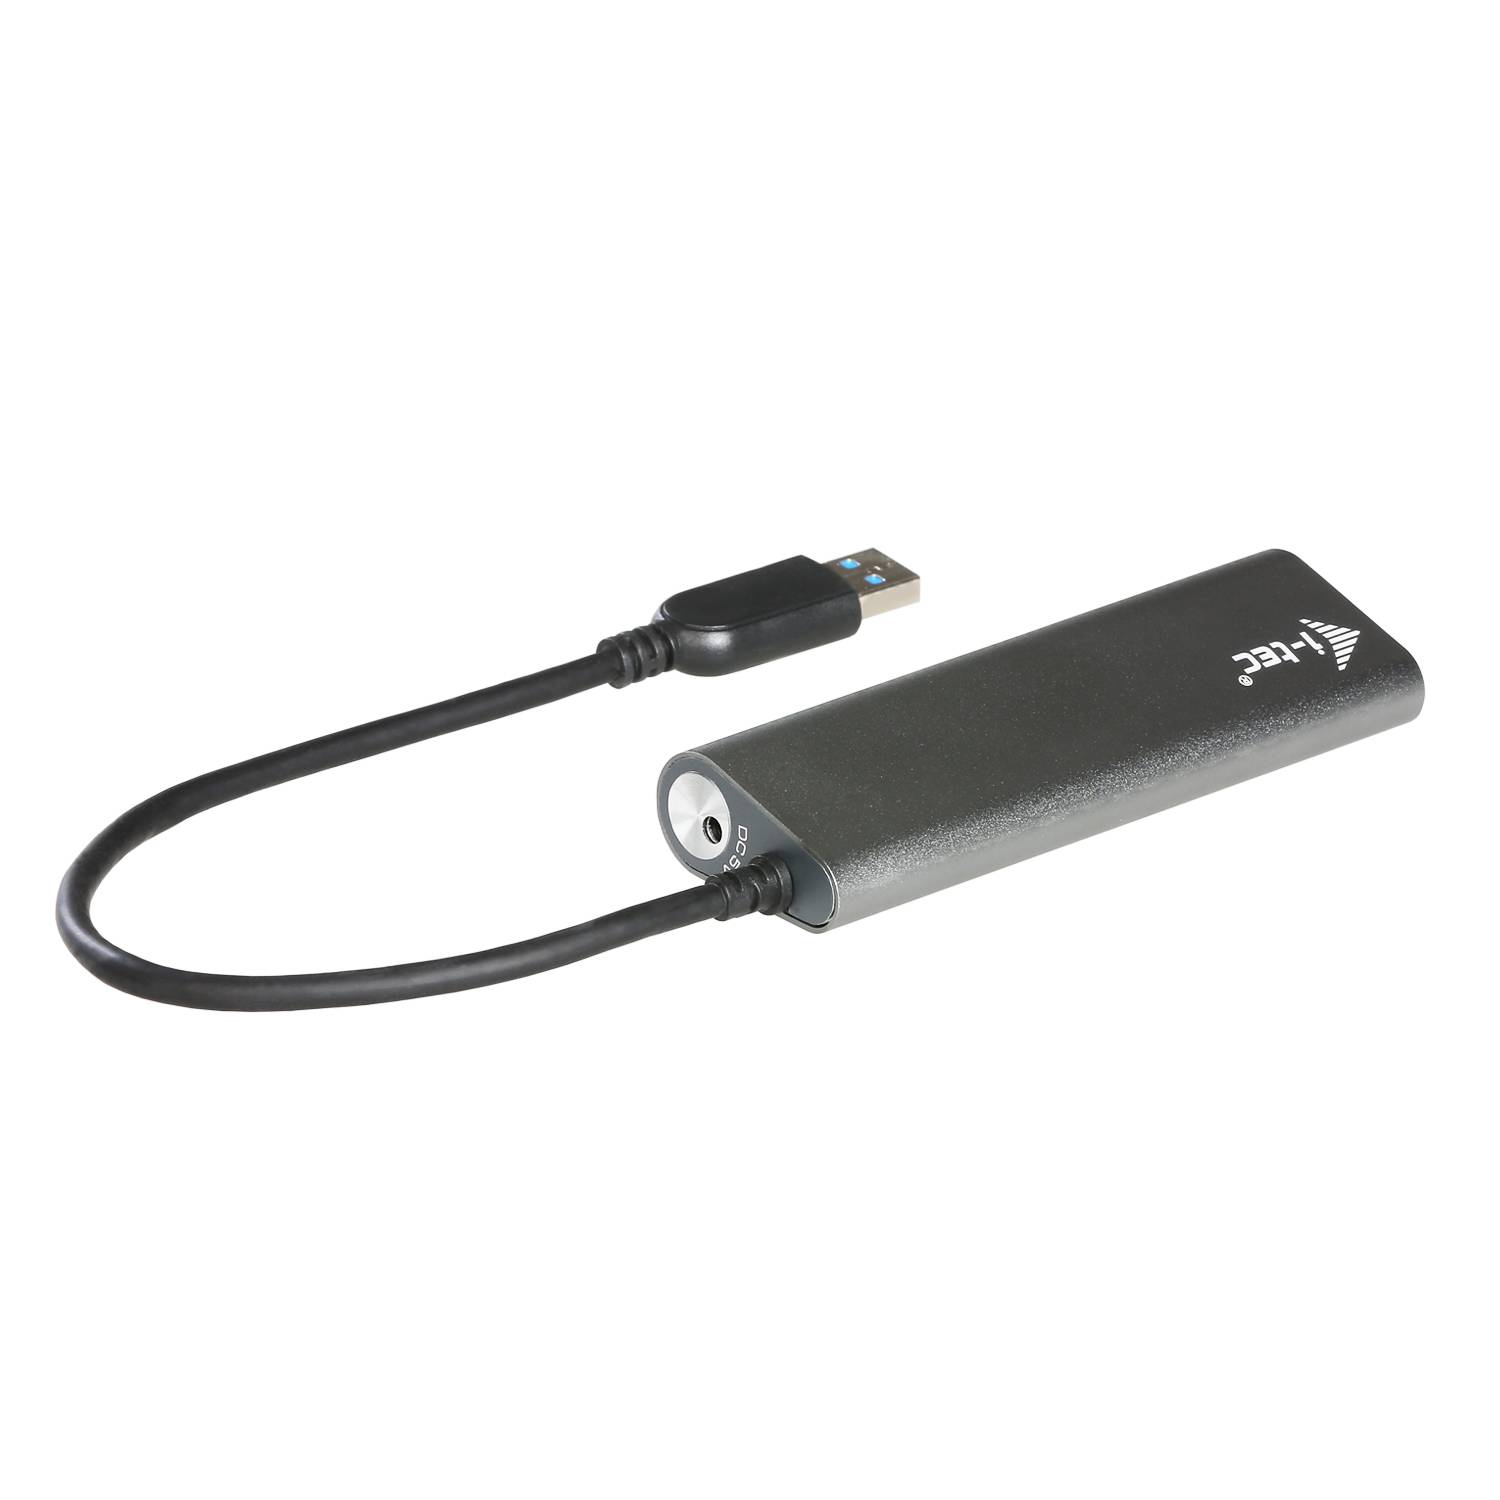 Rca Informatique - image du produit : I-TEC METAL CHARGING HUB 4 PORT USB 3.0 EXT PS 4XUSB CHARGING